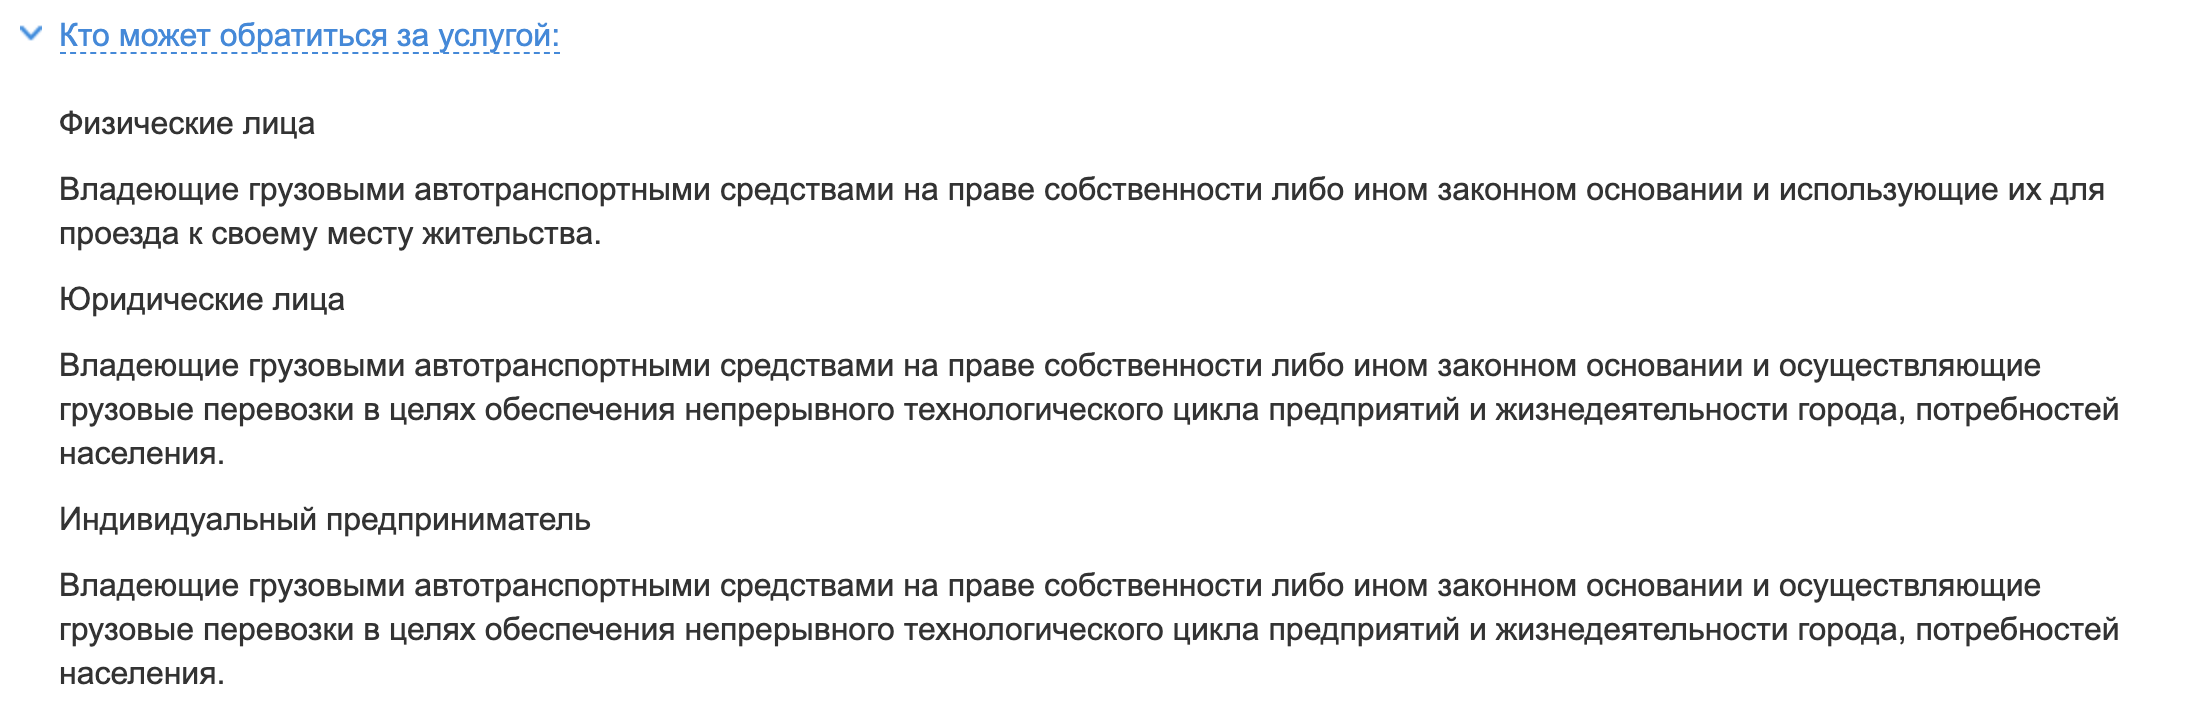 Изменения правил въезда в Москву 05 мая 2021. Регистрация в РНИС.